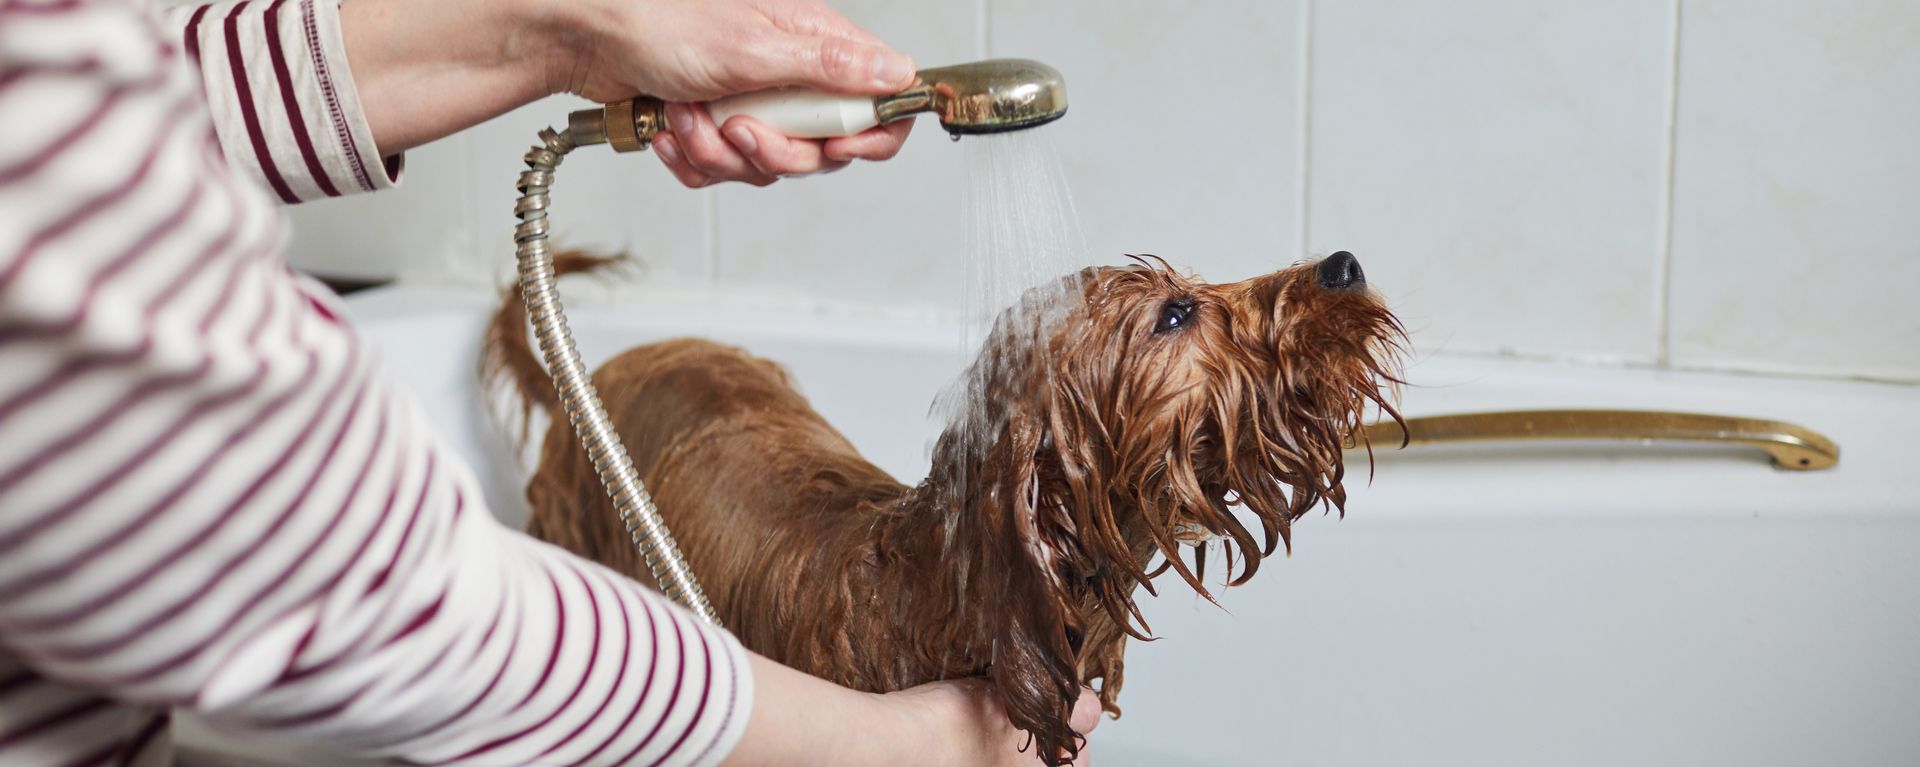 Как ухаживать за шерстью собаки - как вычесывать, стричь и купать